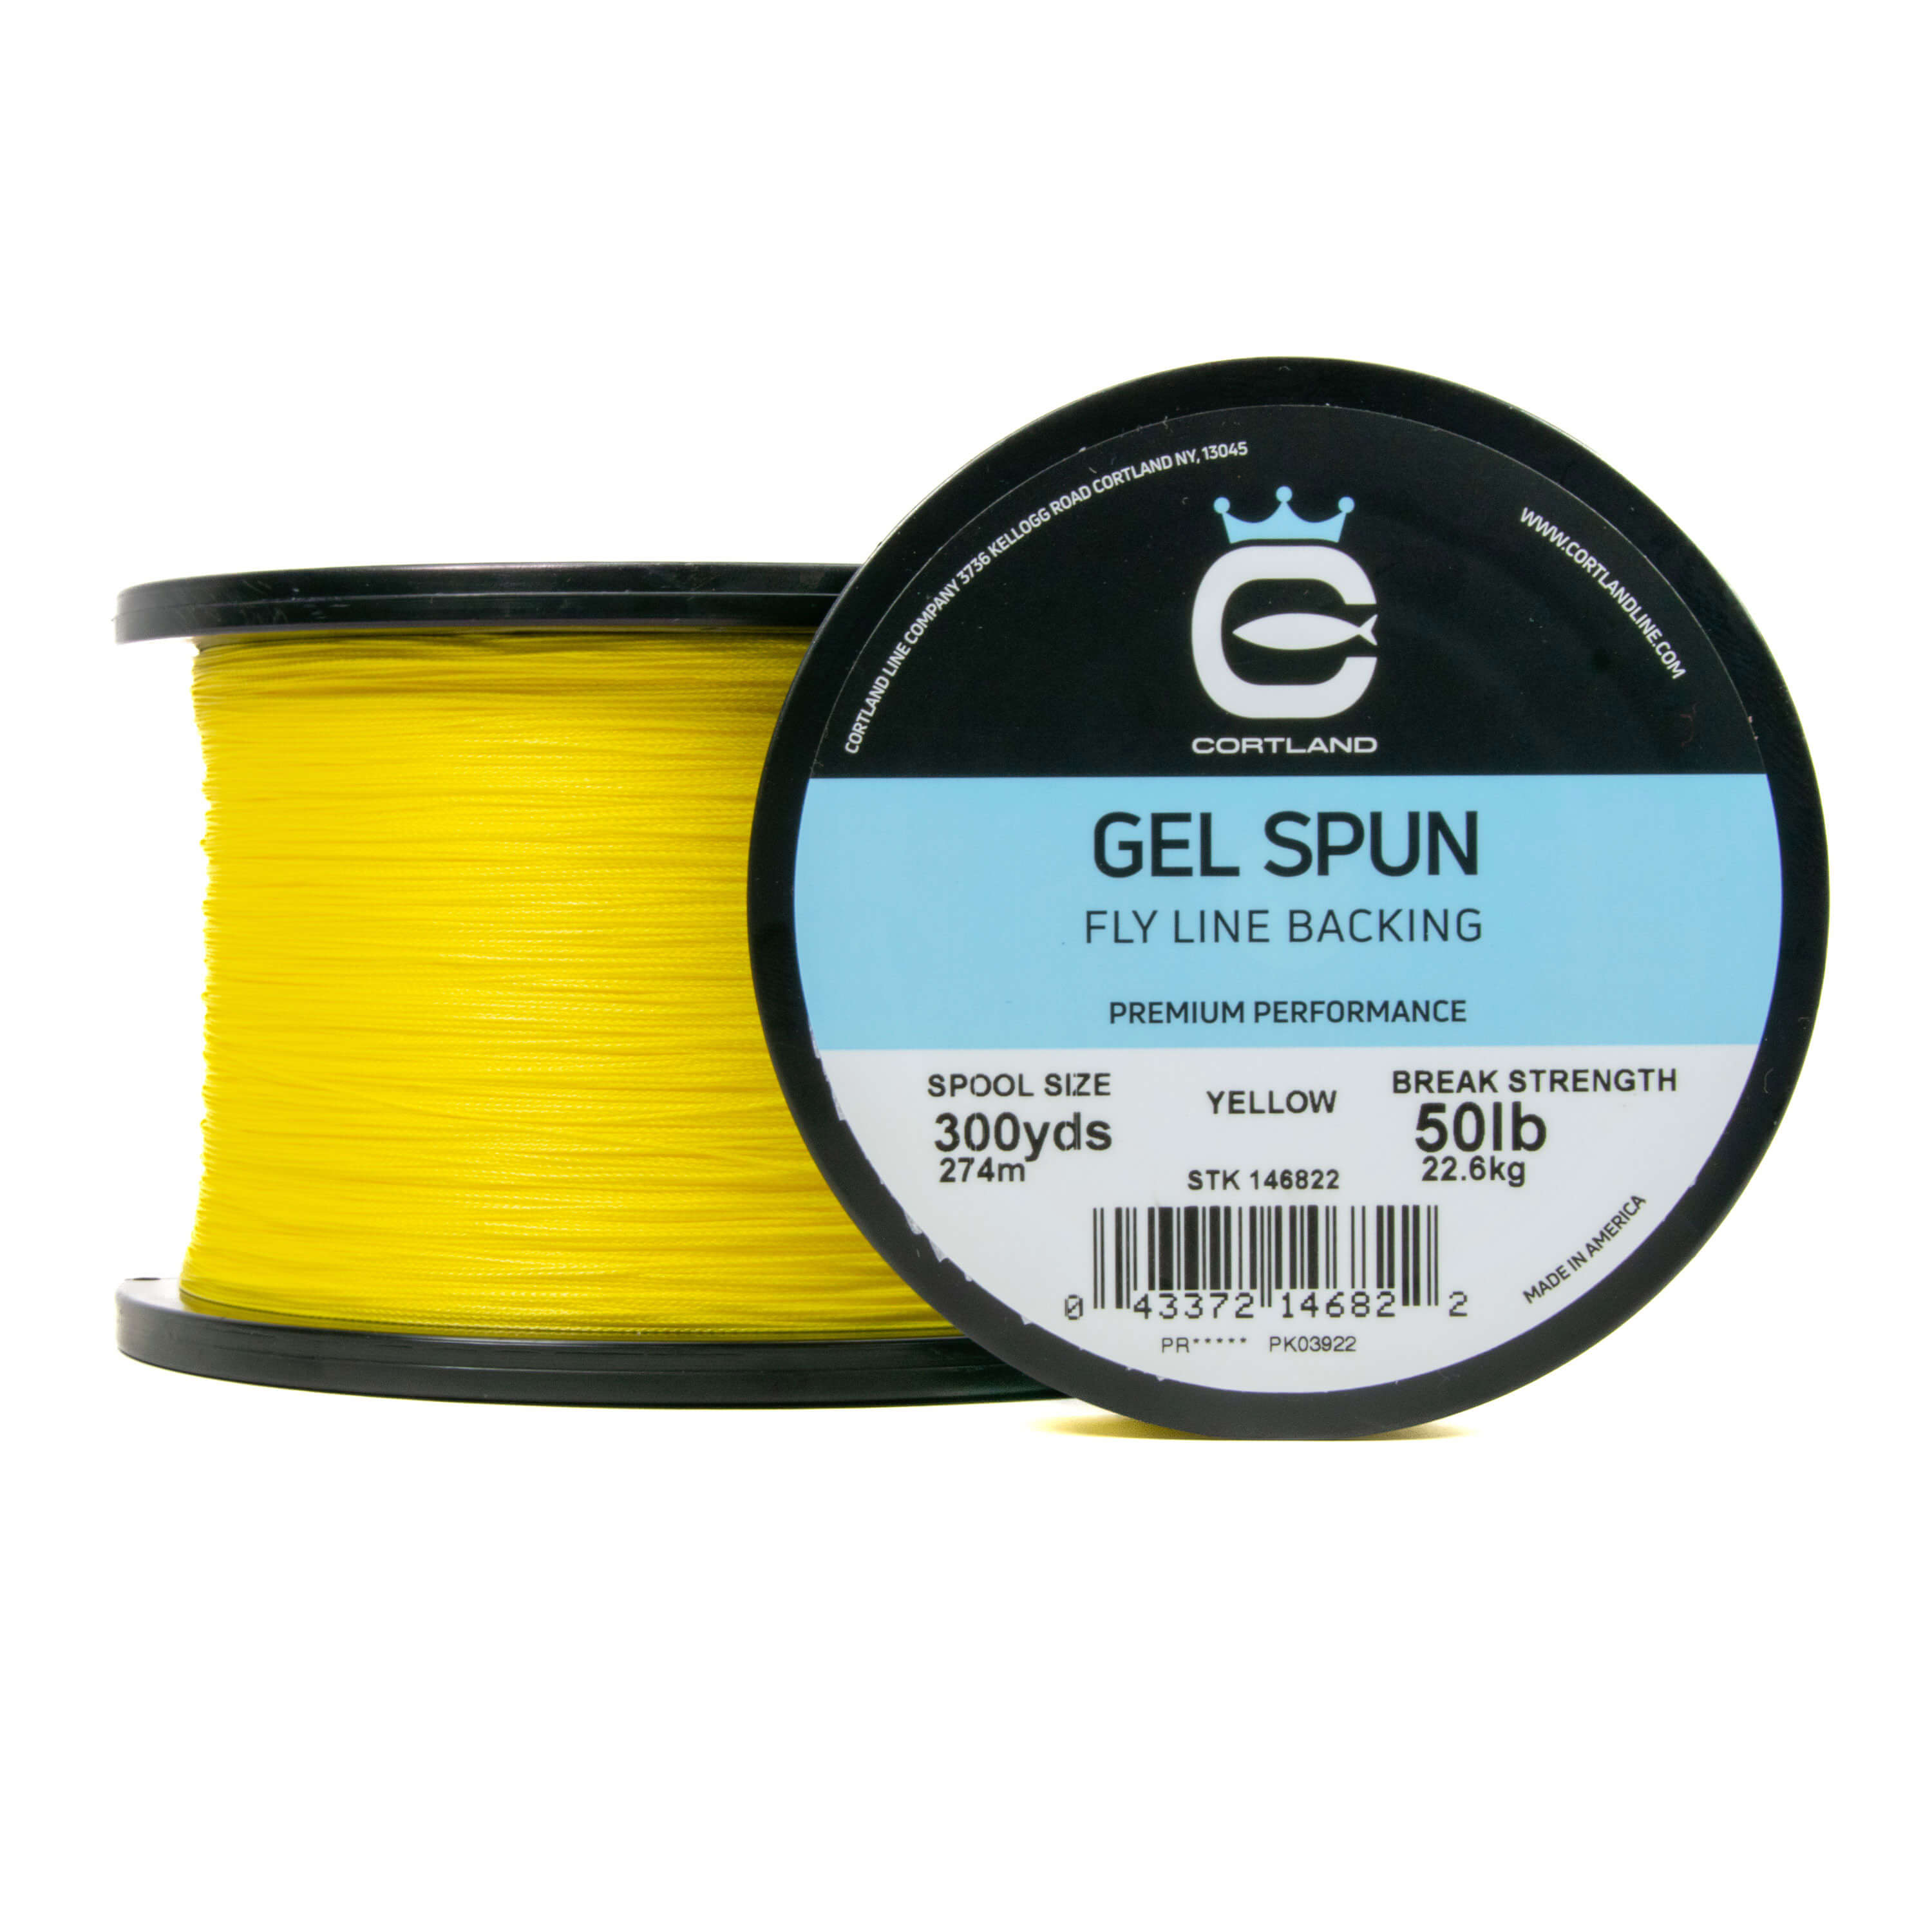 Gel Spun Fly Line Backing - Yellow